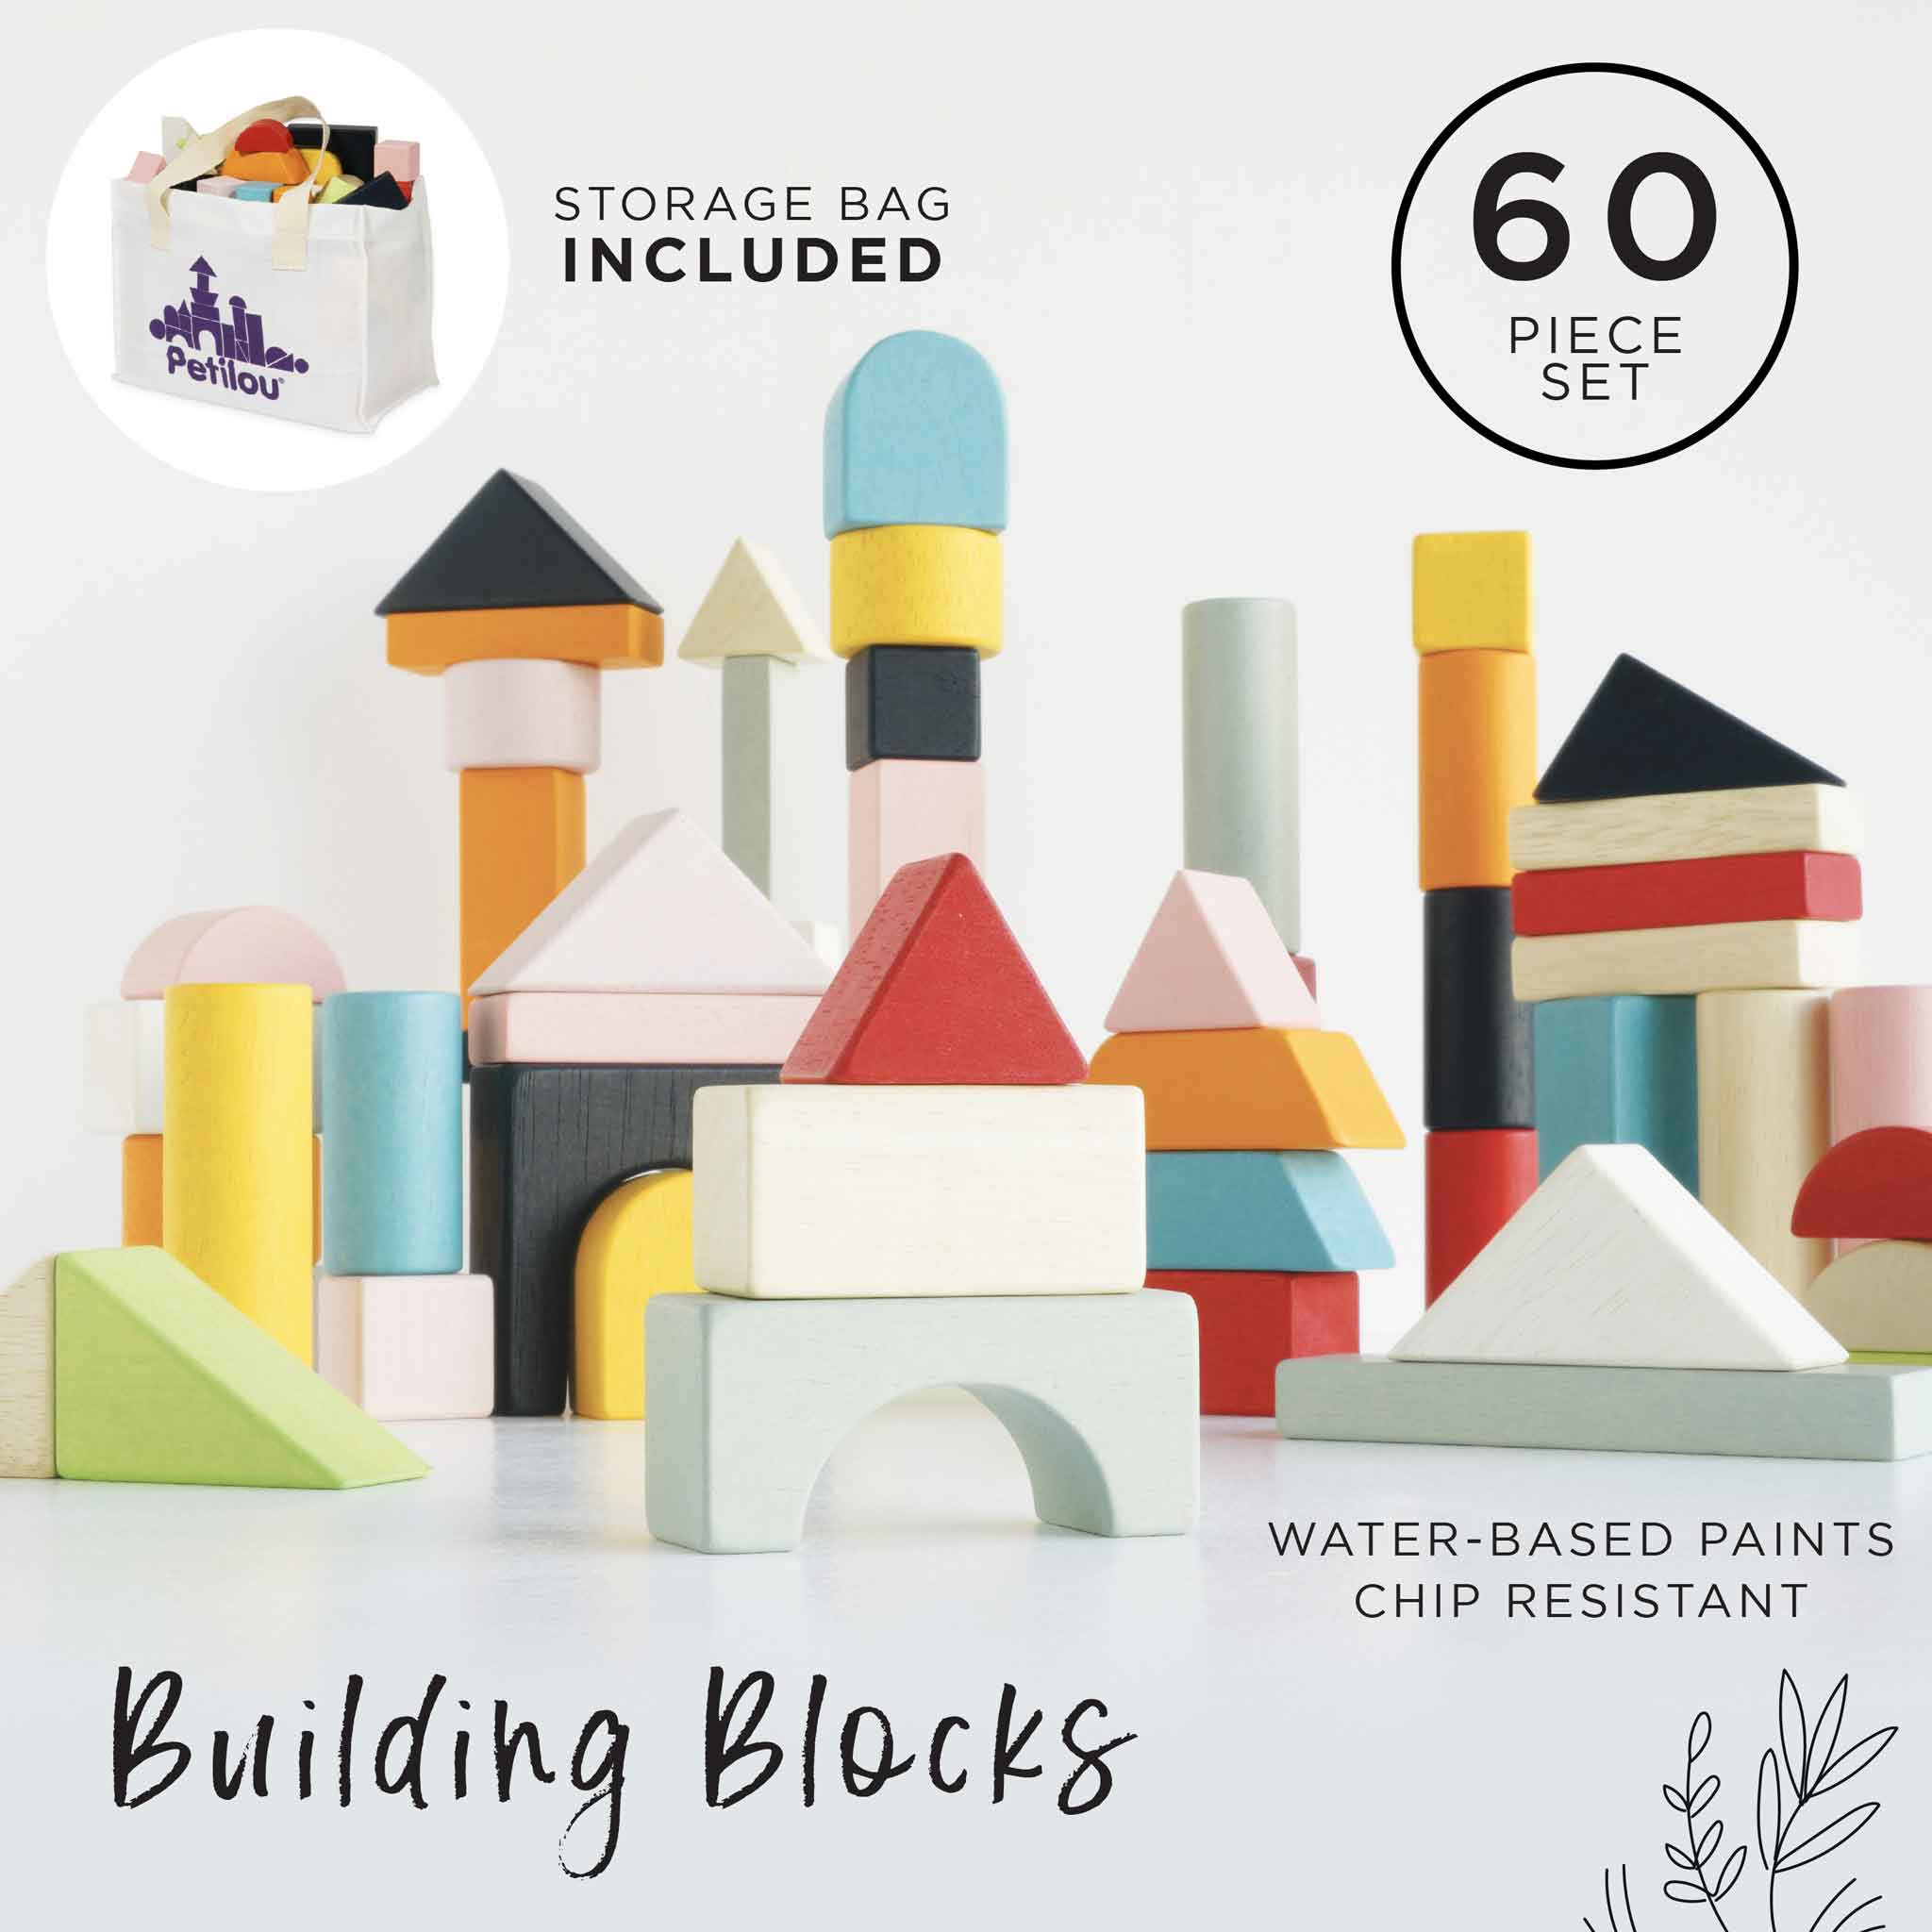 60 Building Blocks & Cotton Bag